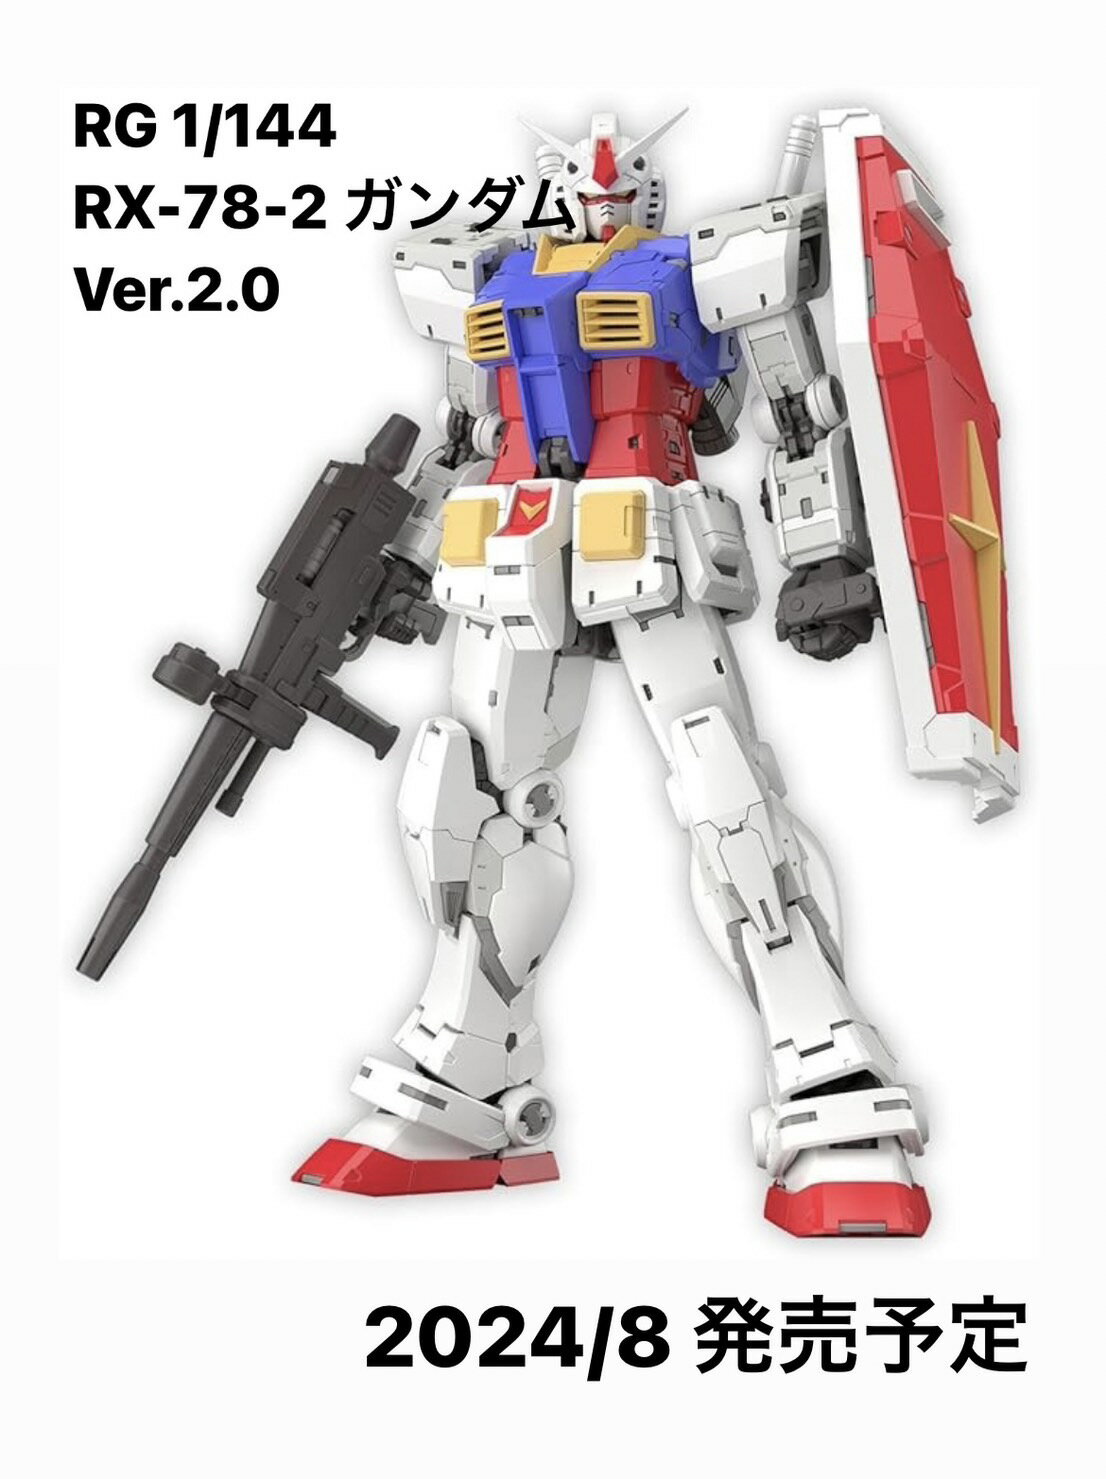 8月 発売予定 RG 機動戦士ガンダム RX-78-2 ガンダム Ver.2.0 1/144スケール 色分け済みプラモデル